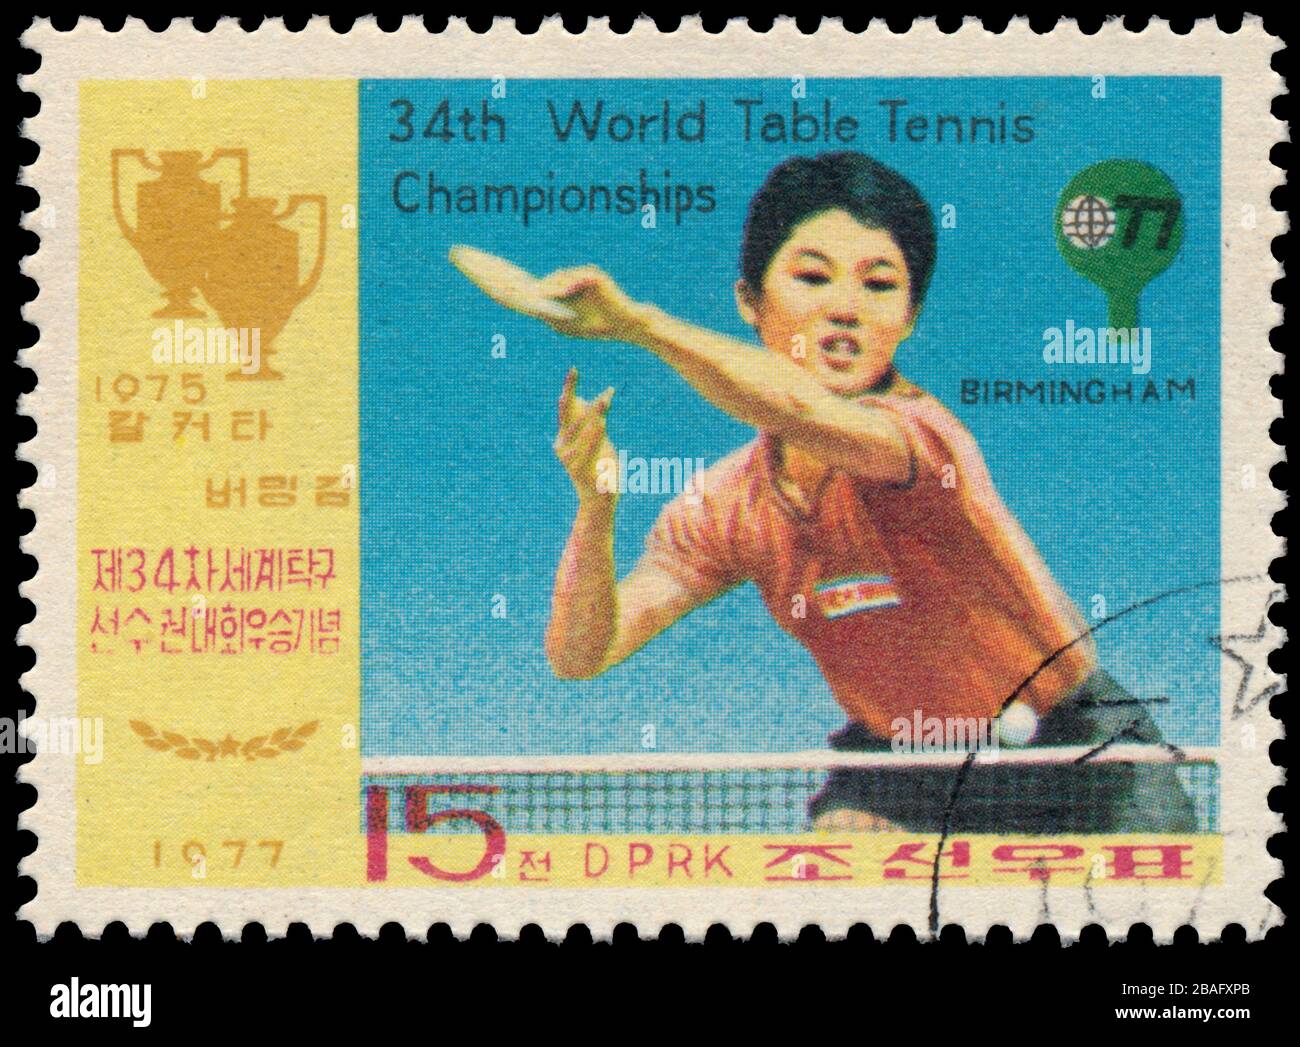 BUDAPEST, HONGRIE - 27 MARS 2020: Un timbre imprimé en Corée du Nord montre le tennis de table, vers 1977 Banque D'Images